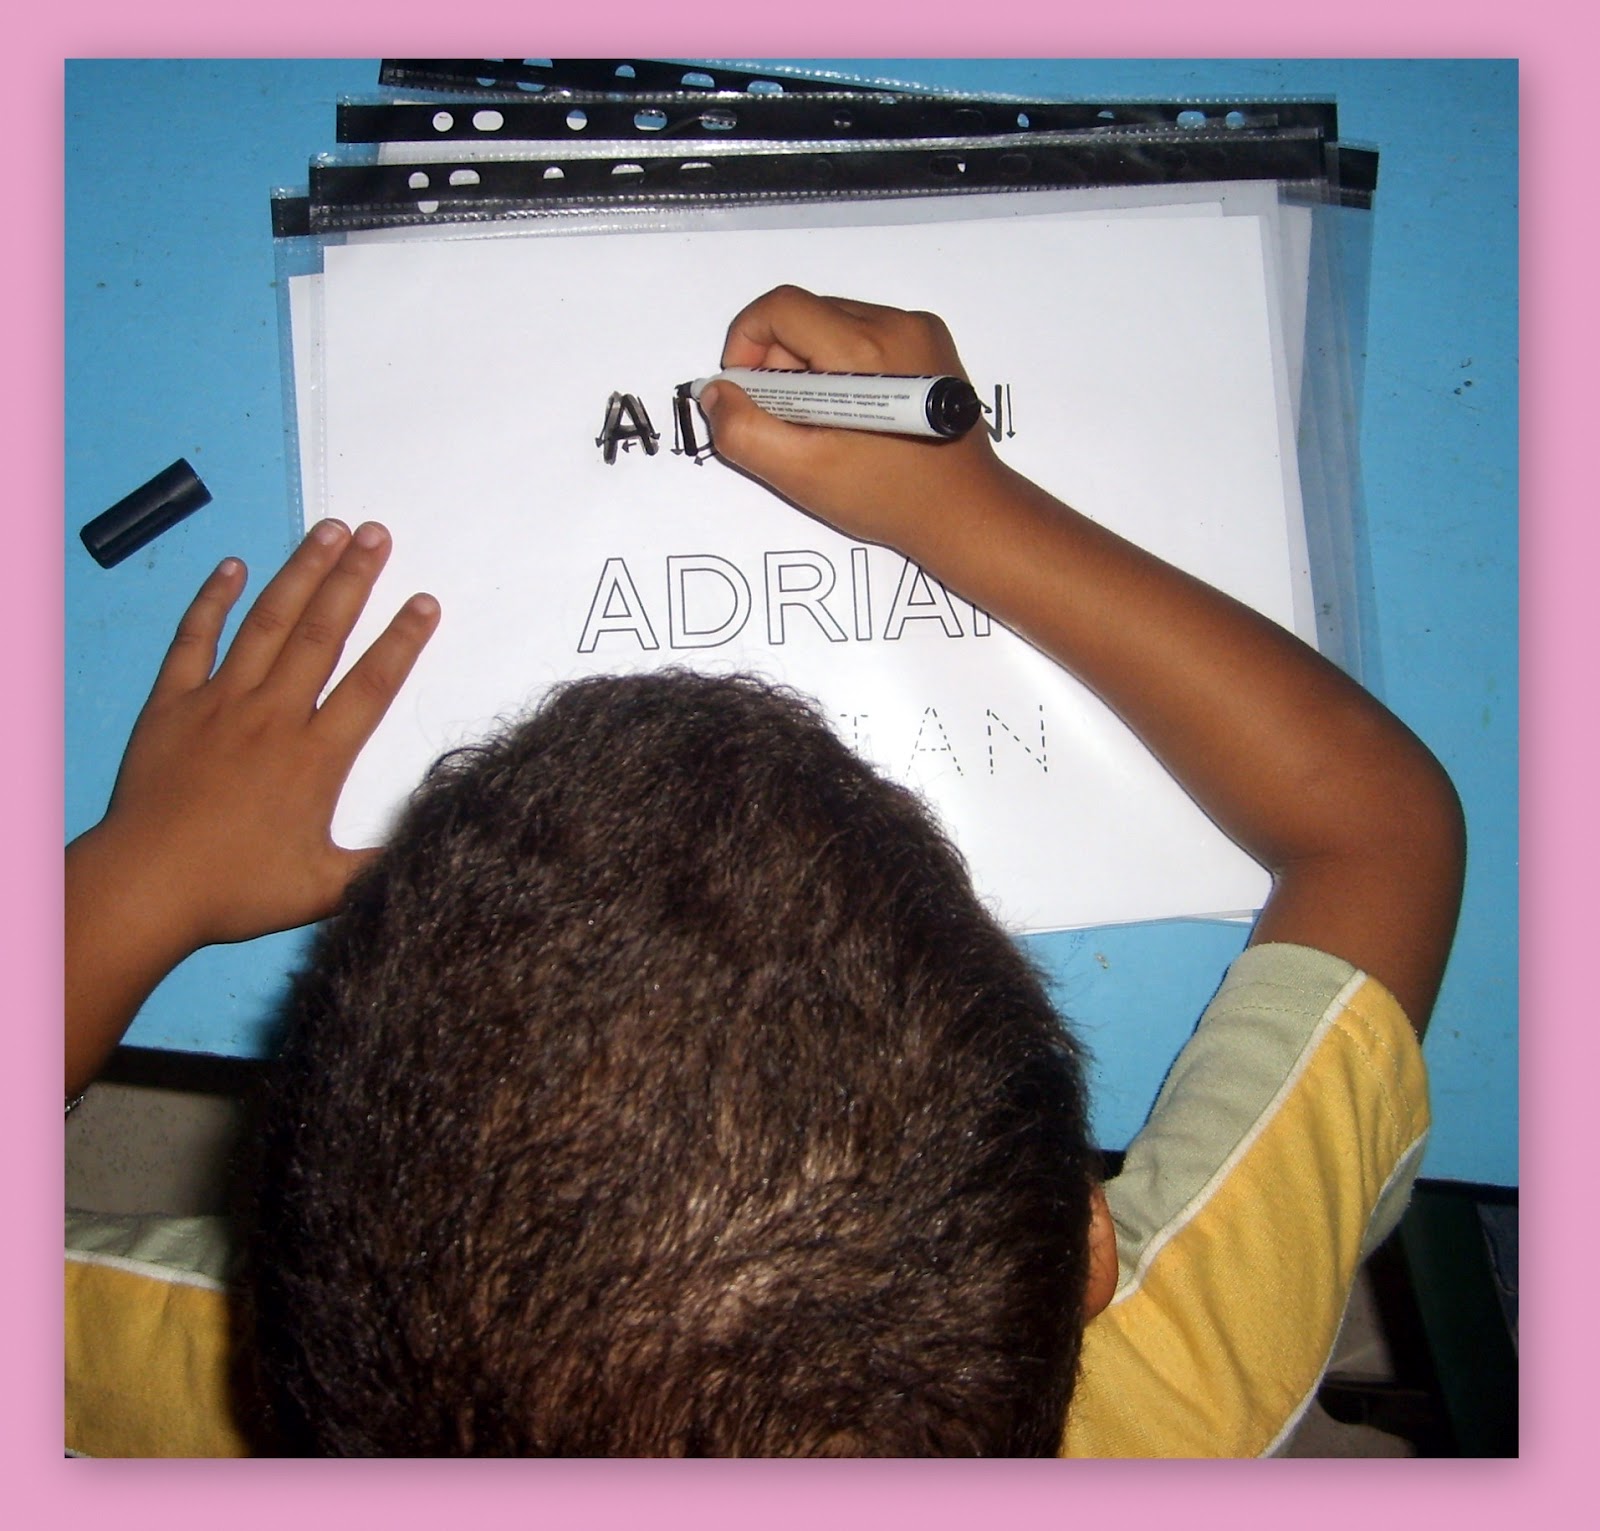 Classe Maternelle PS-MS 2011-2012: L'écriture du prénom